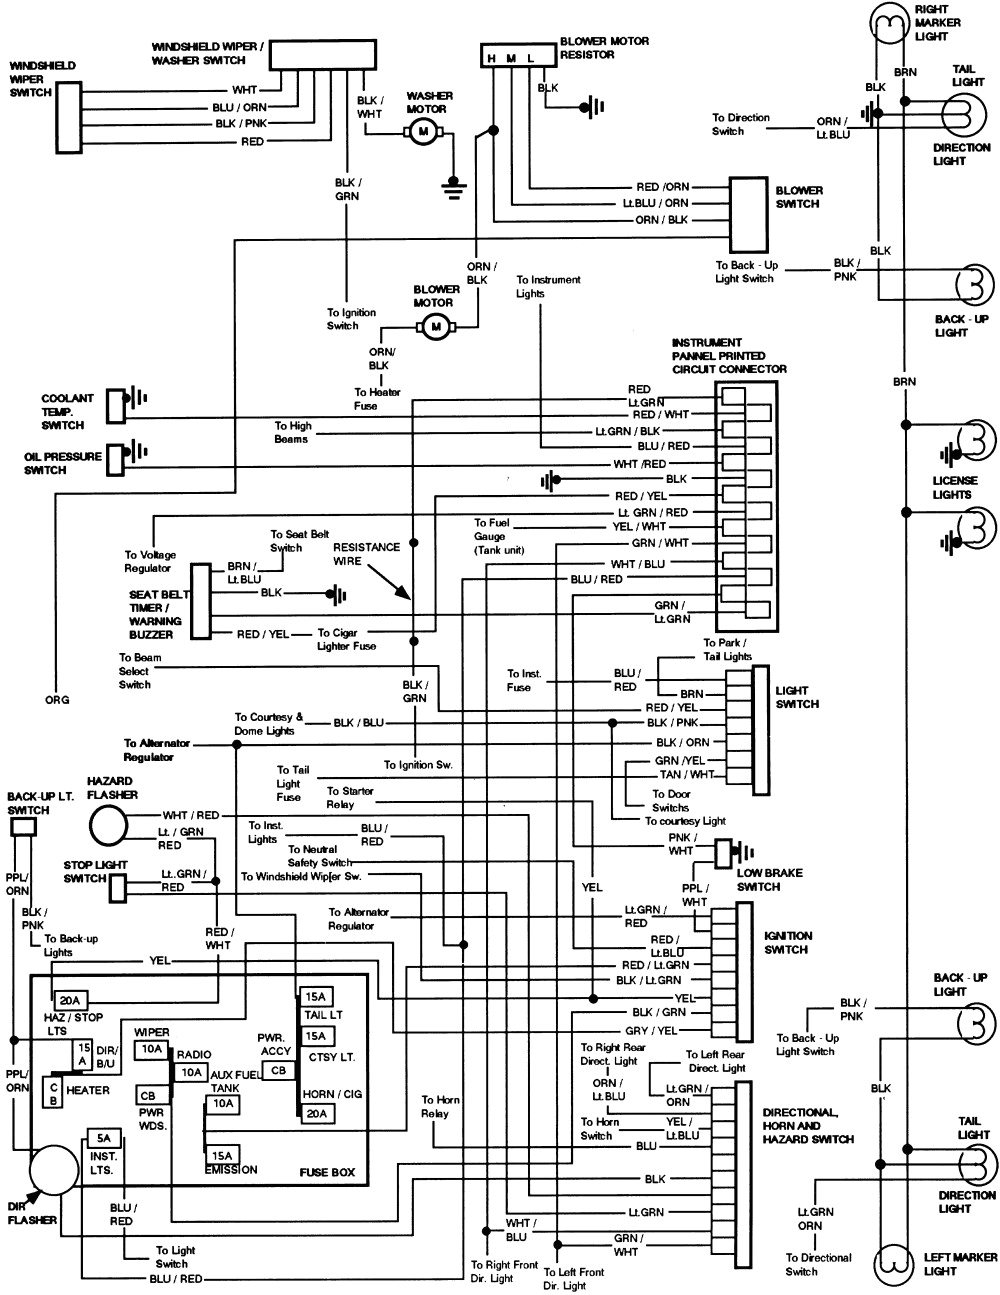 2002 f150 dash wiring schematic wiring diagram name2002 f150 dash wiring schematic wiring diagram features 2002